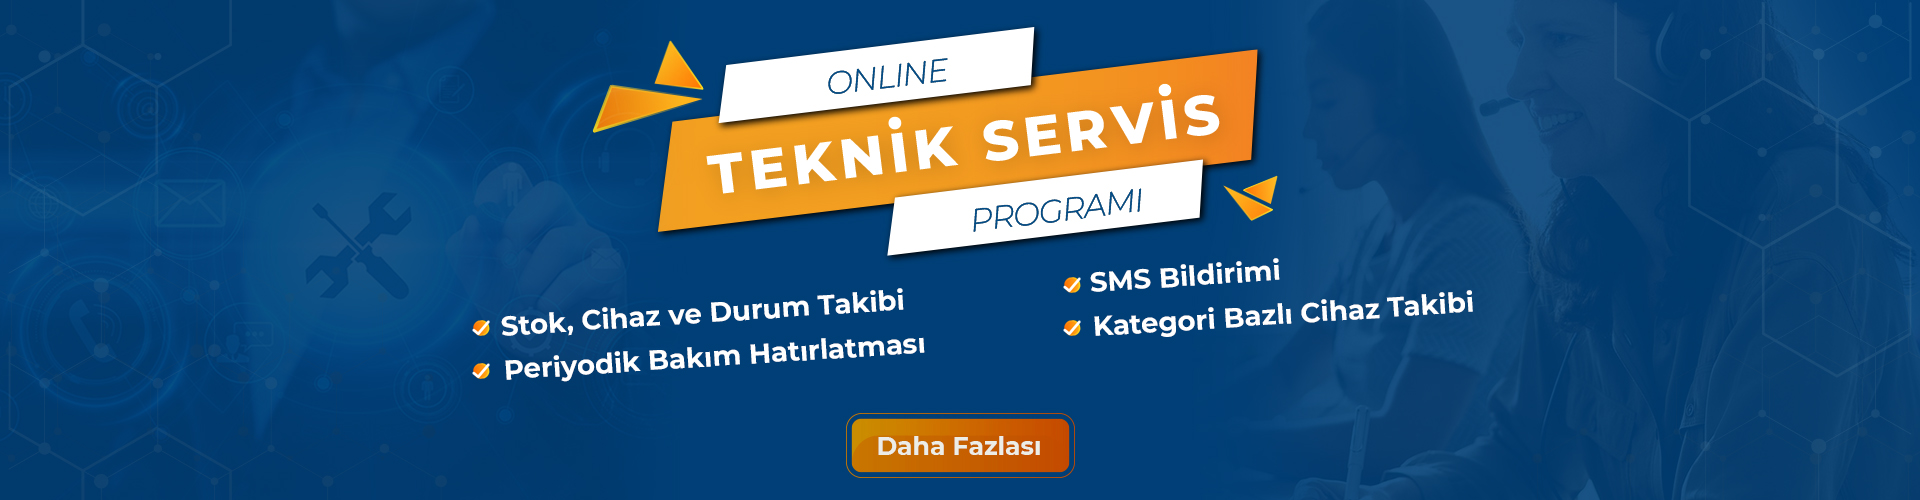 online teknik servis programÄ±